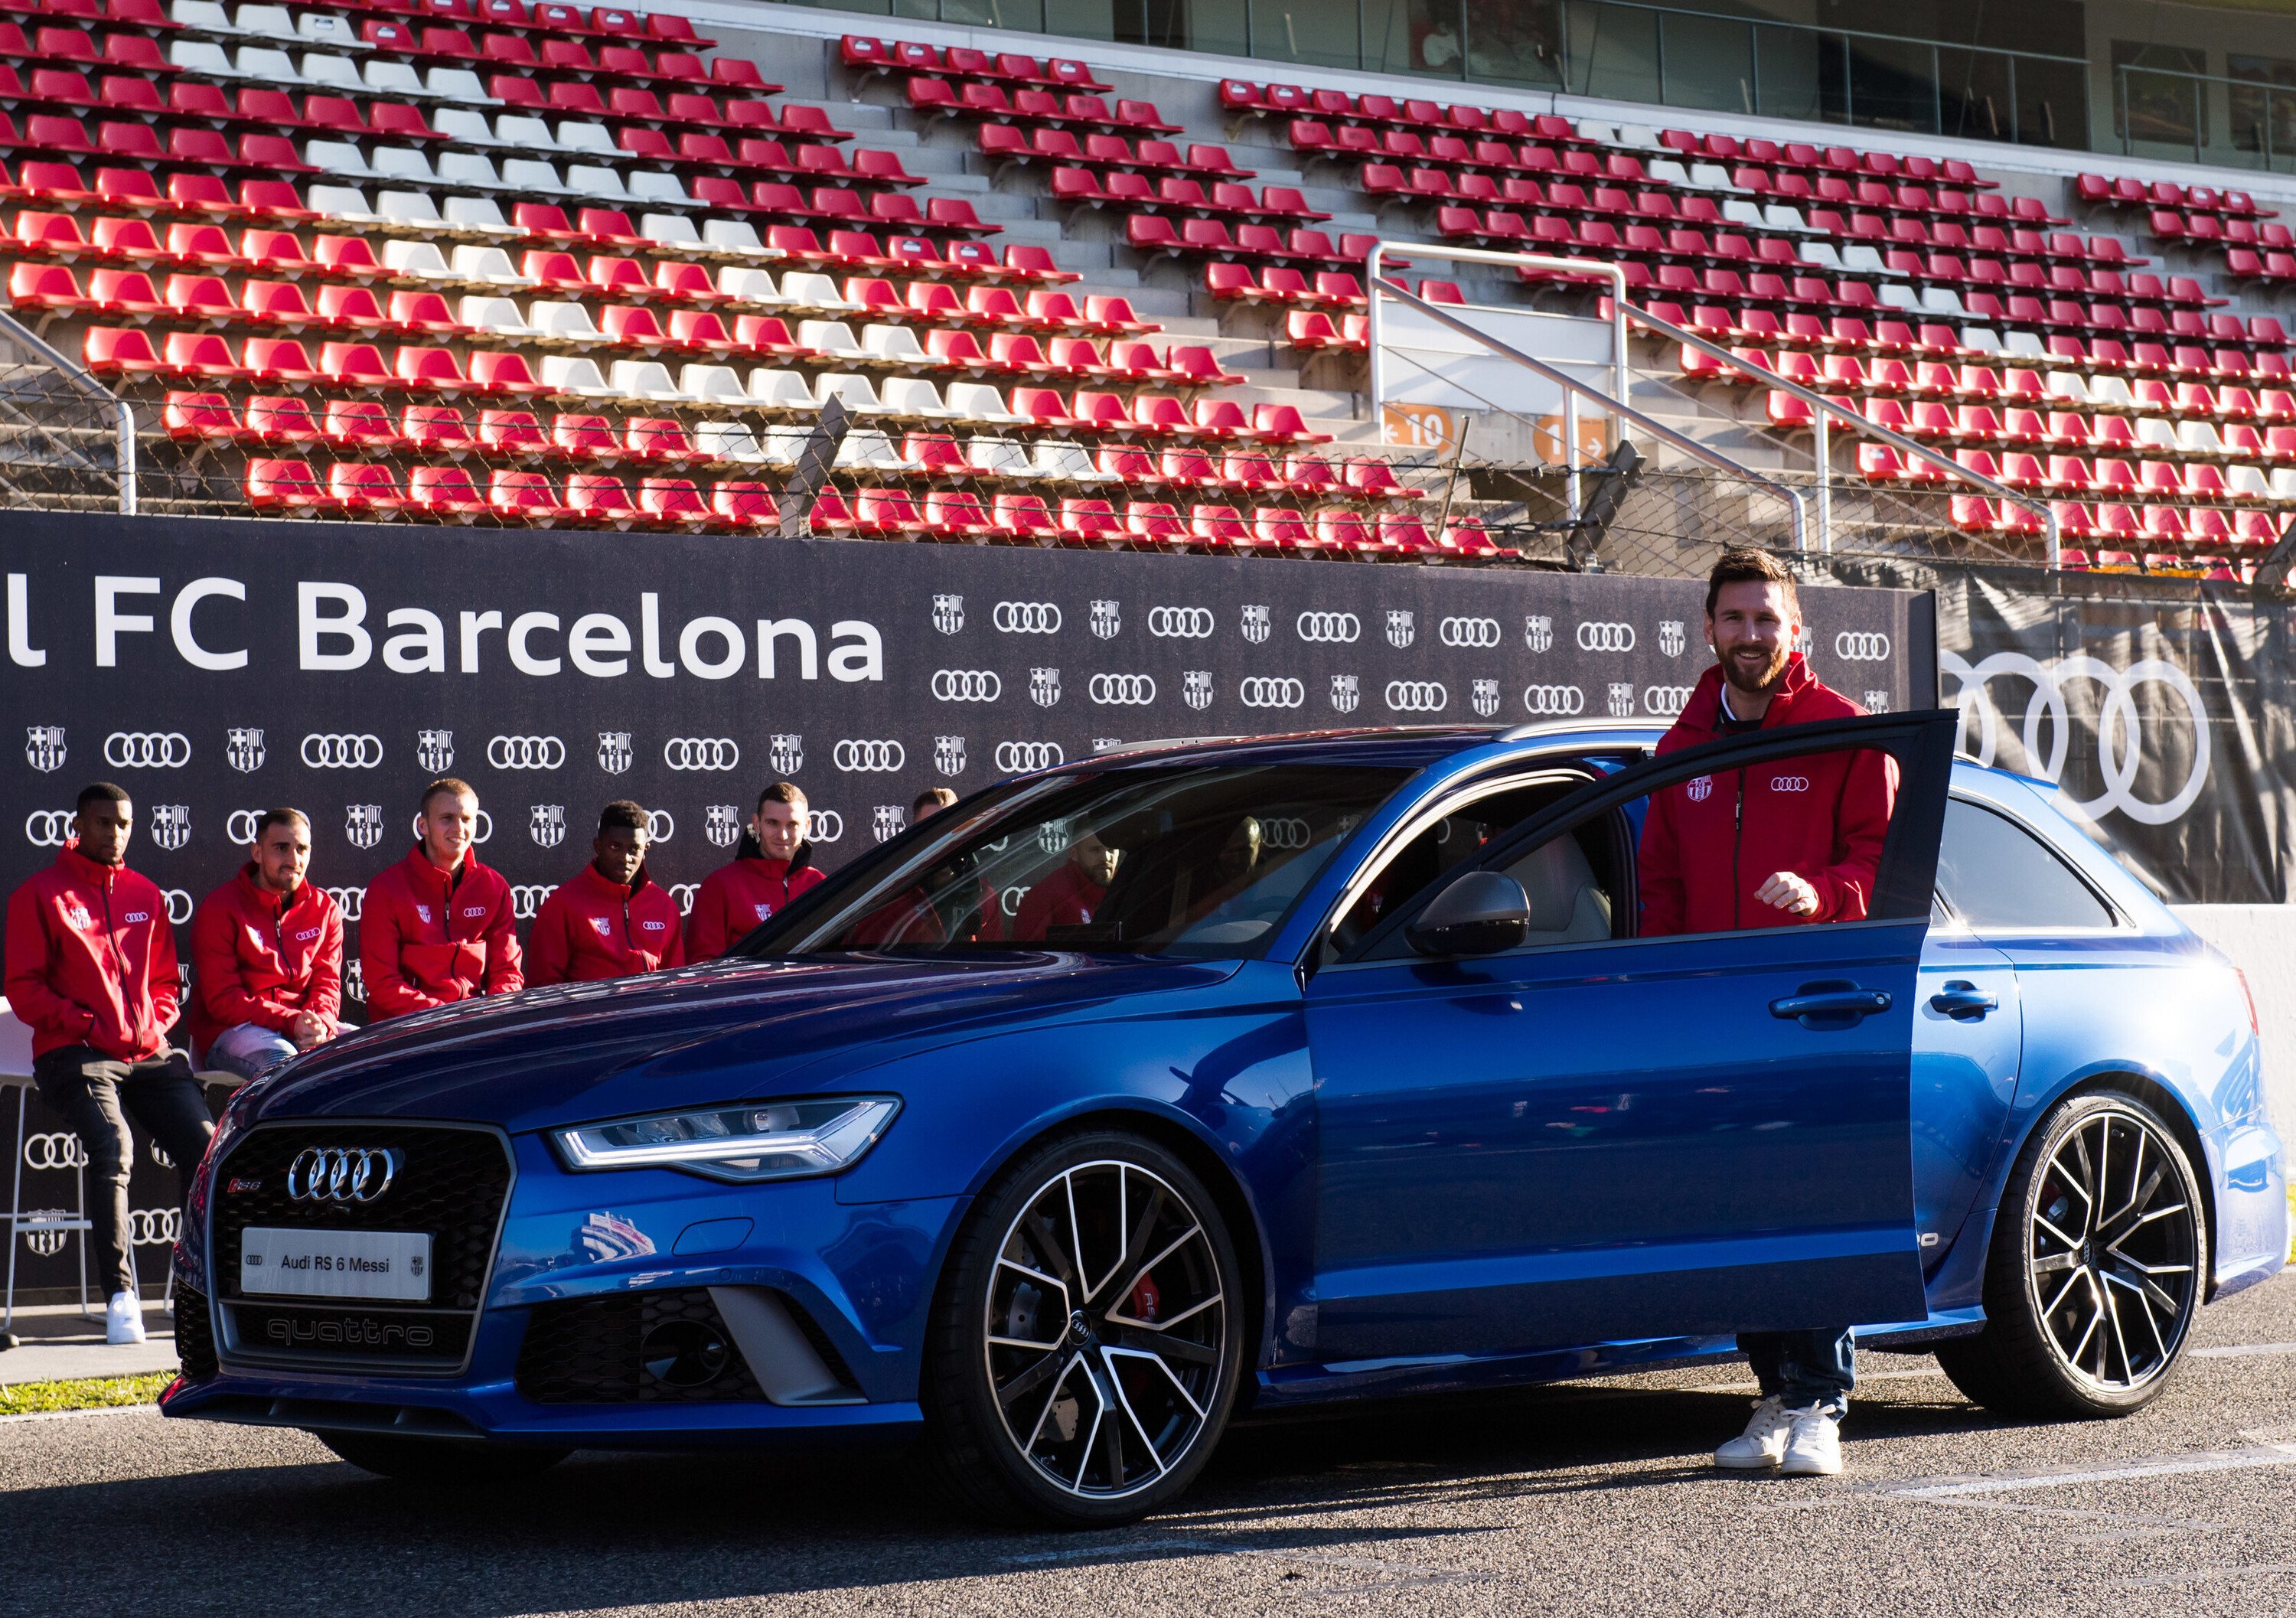 Audi-Barcellona, accordo al termine: i calciatori devono restituire le auto